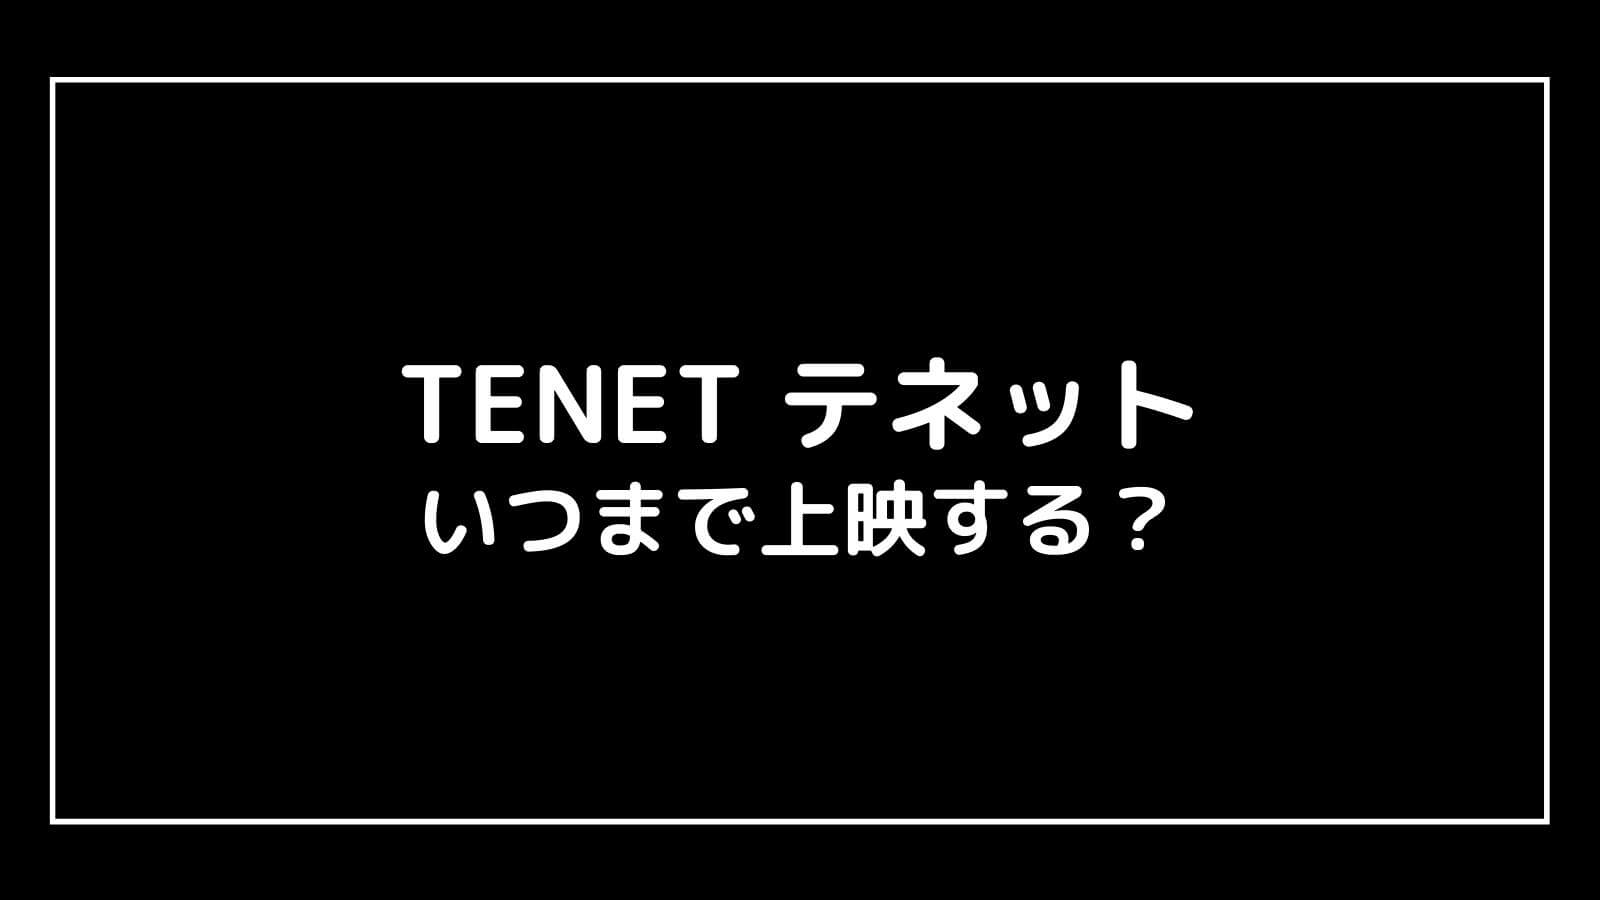 映画『TENET テネット』はいつまで上映する？元映画館社員が上映終了日を予想